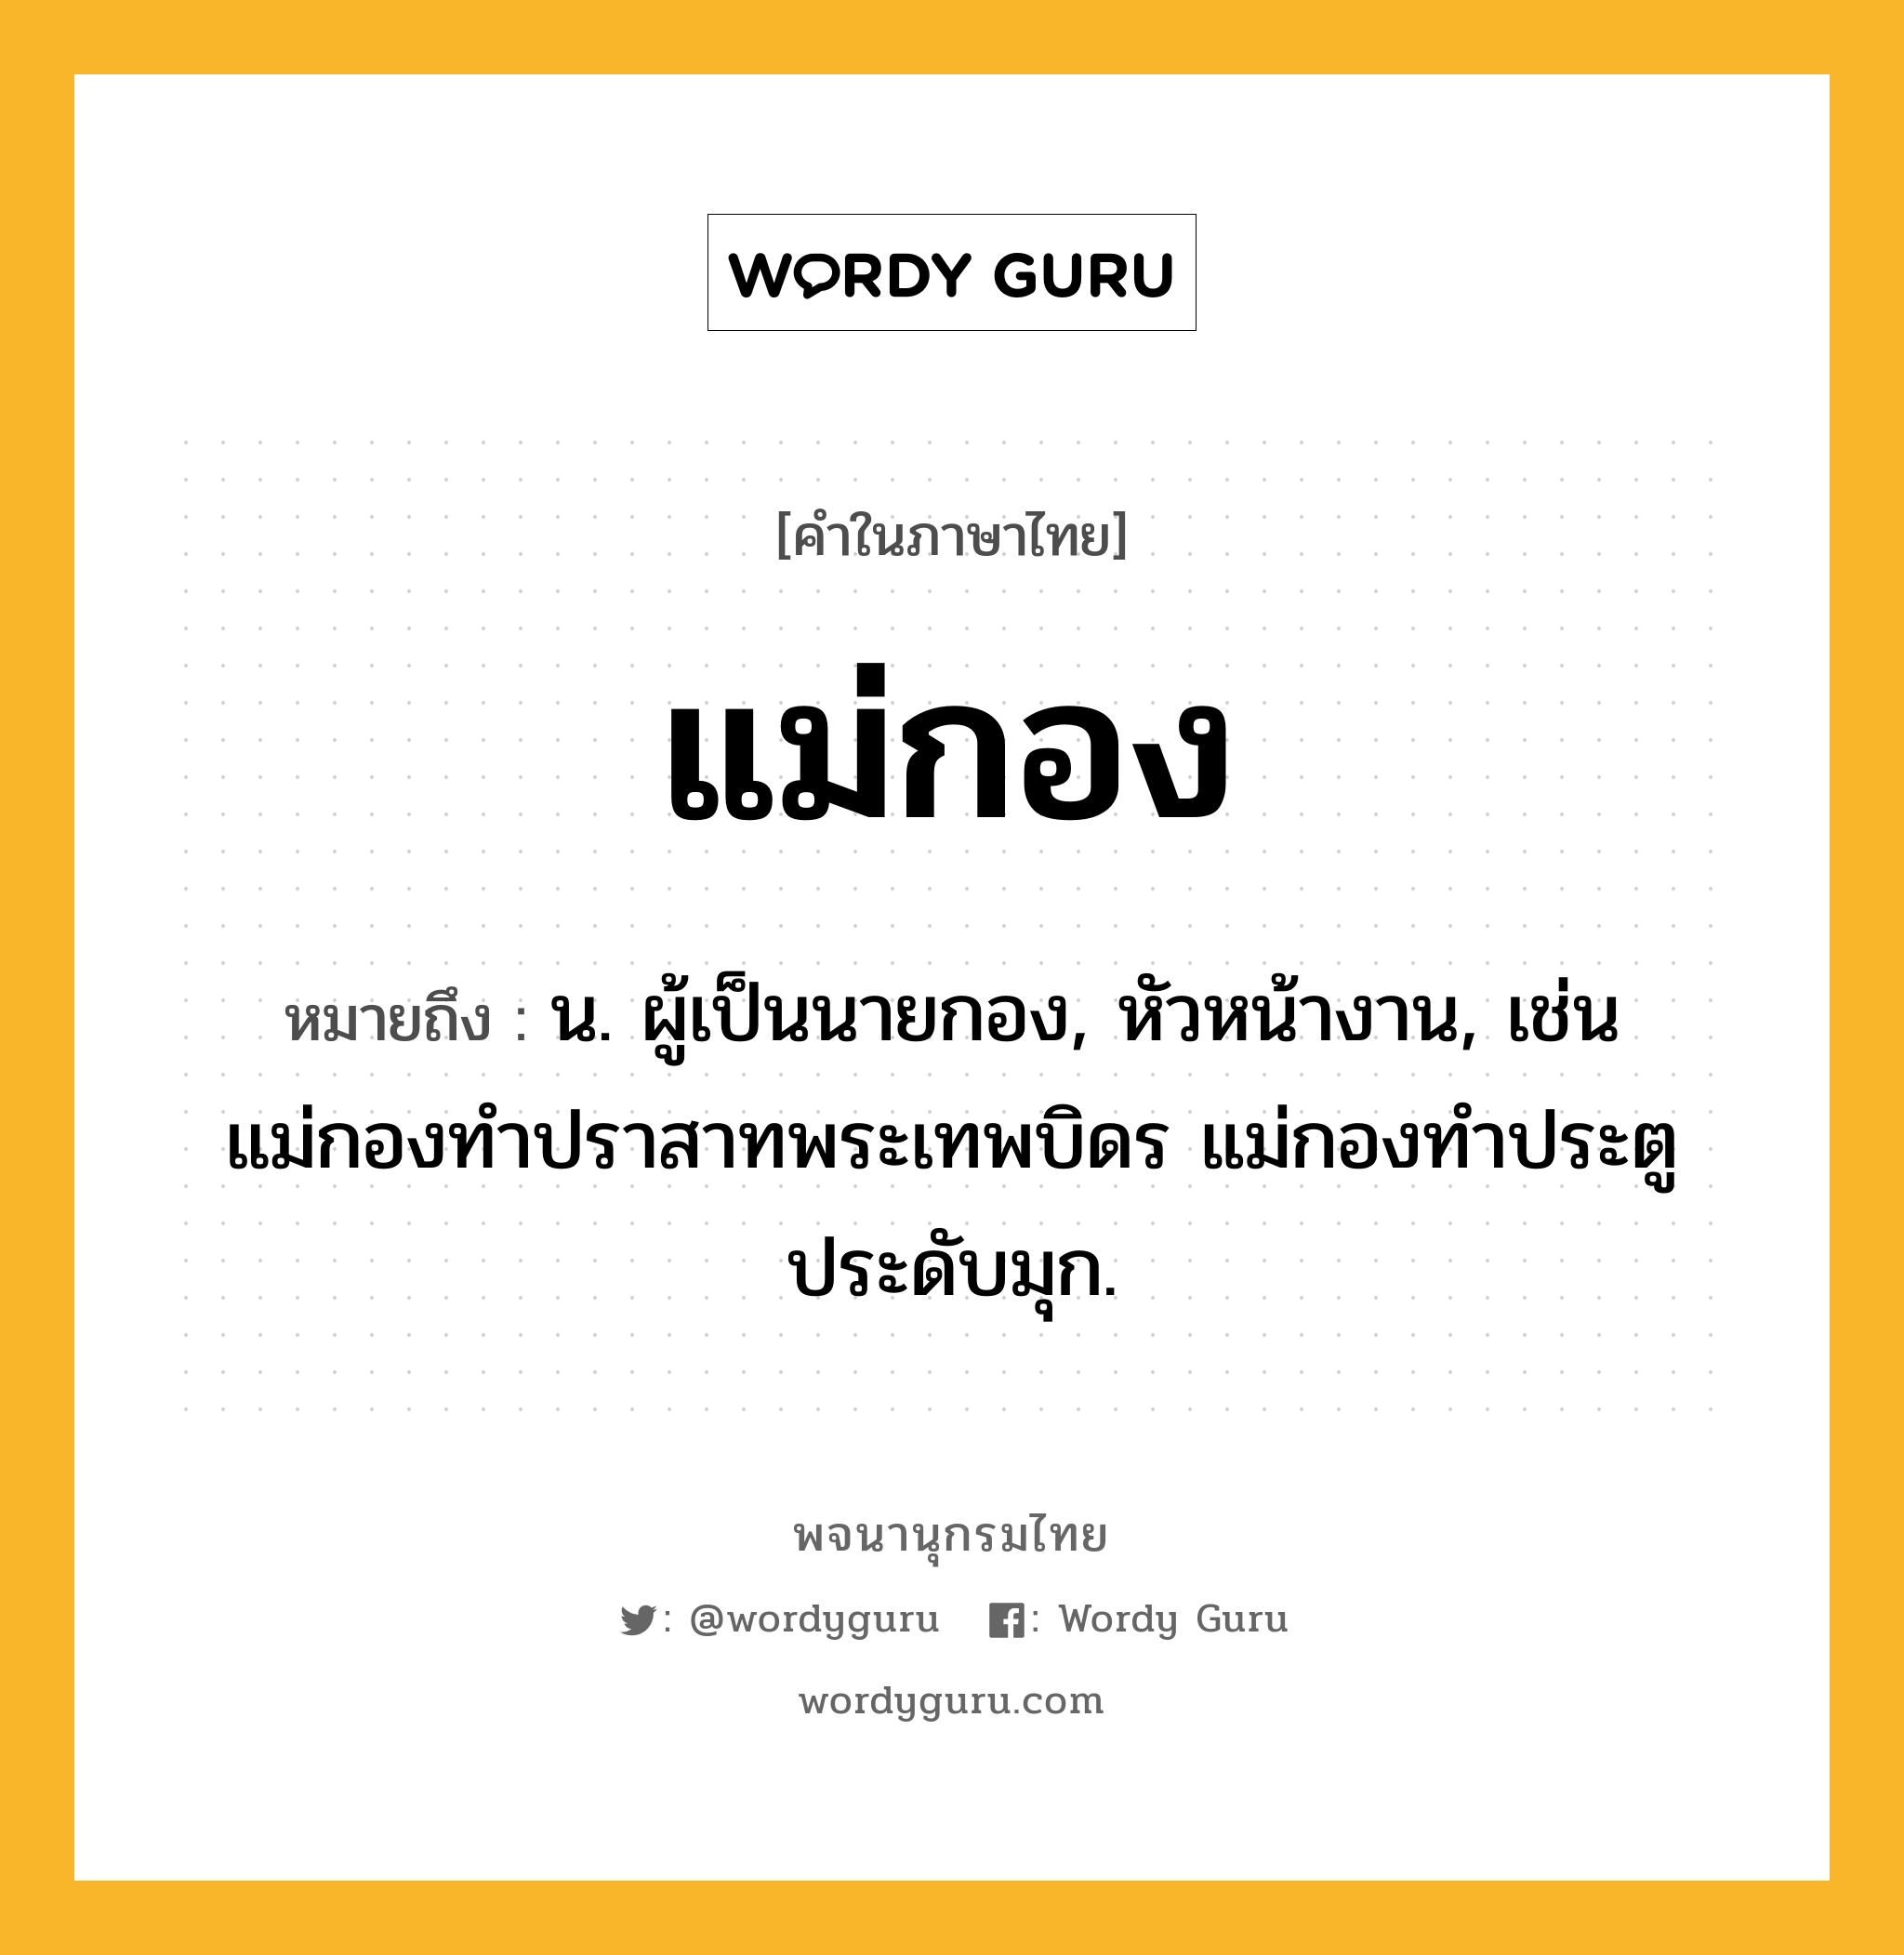 แม่กอง หมายถึงอะไร?, คำในภาษาไทย แม่กอง หมายถึง น. ผู้เป็นนายกอง, หัวหน้างาน, เช่น แม่กองทำปราสาทพระเทพบิดร แม่กองทำประตูประดับมุก.